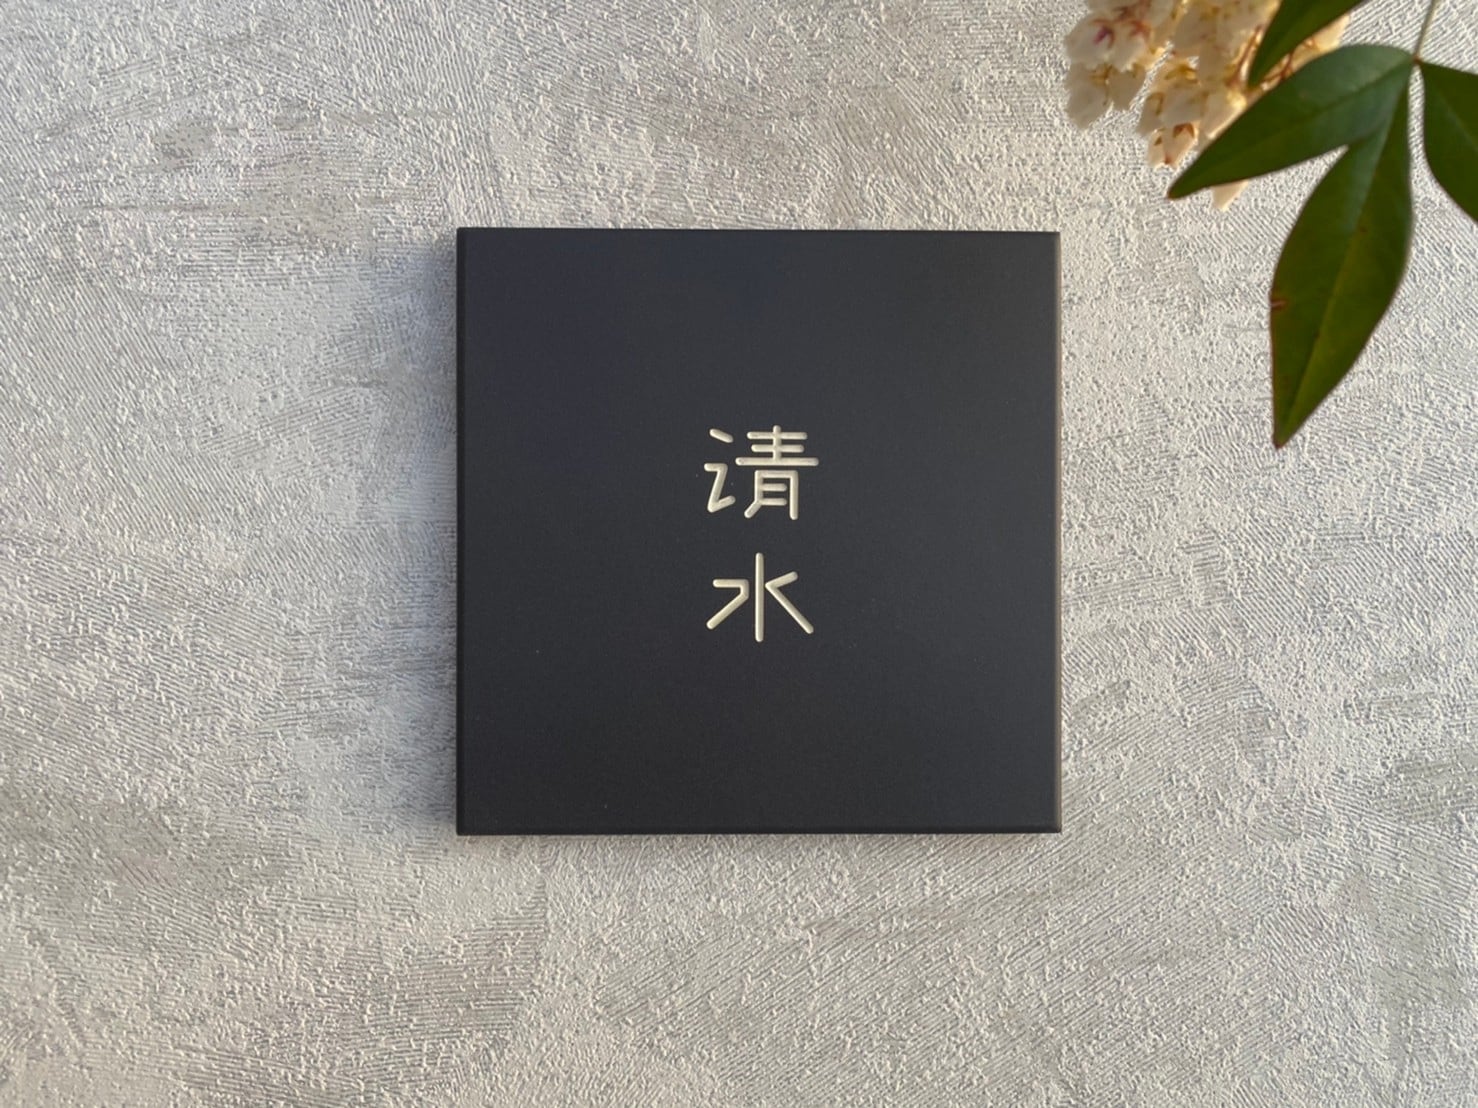 タイル 表札 【 4. kanji 】 forrest sign｜オーダーメイド表札